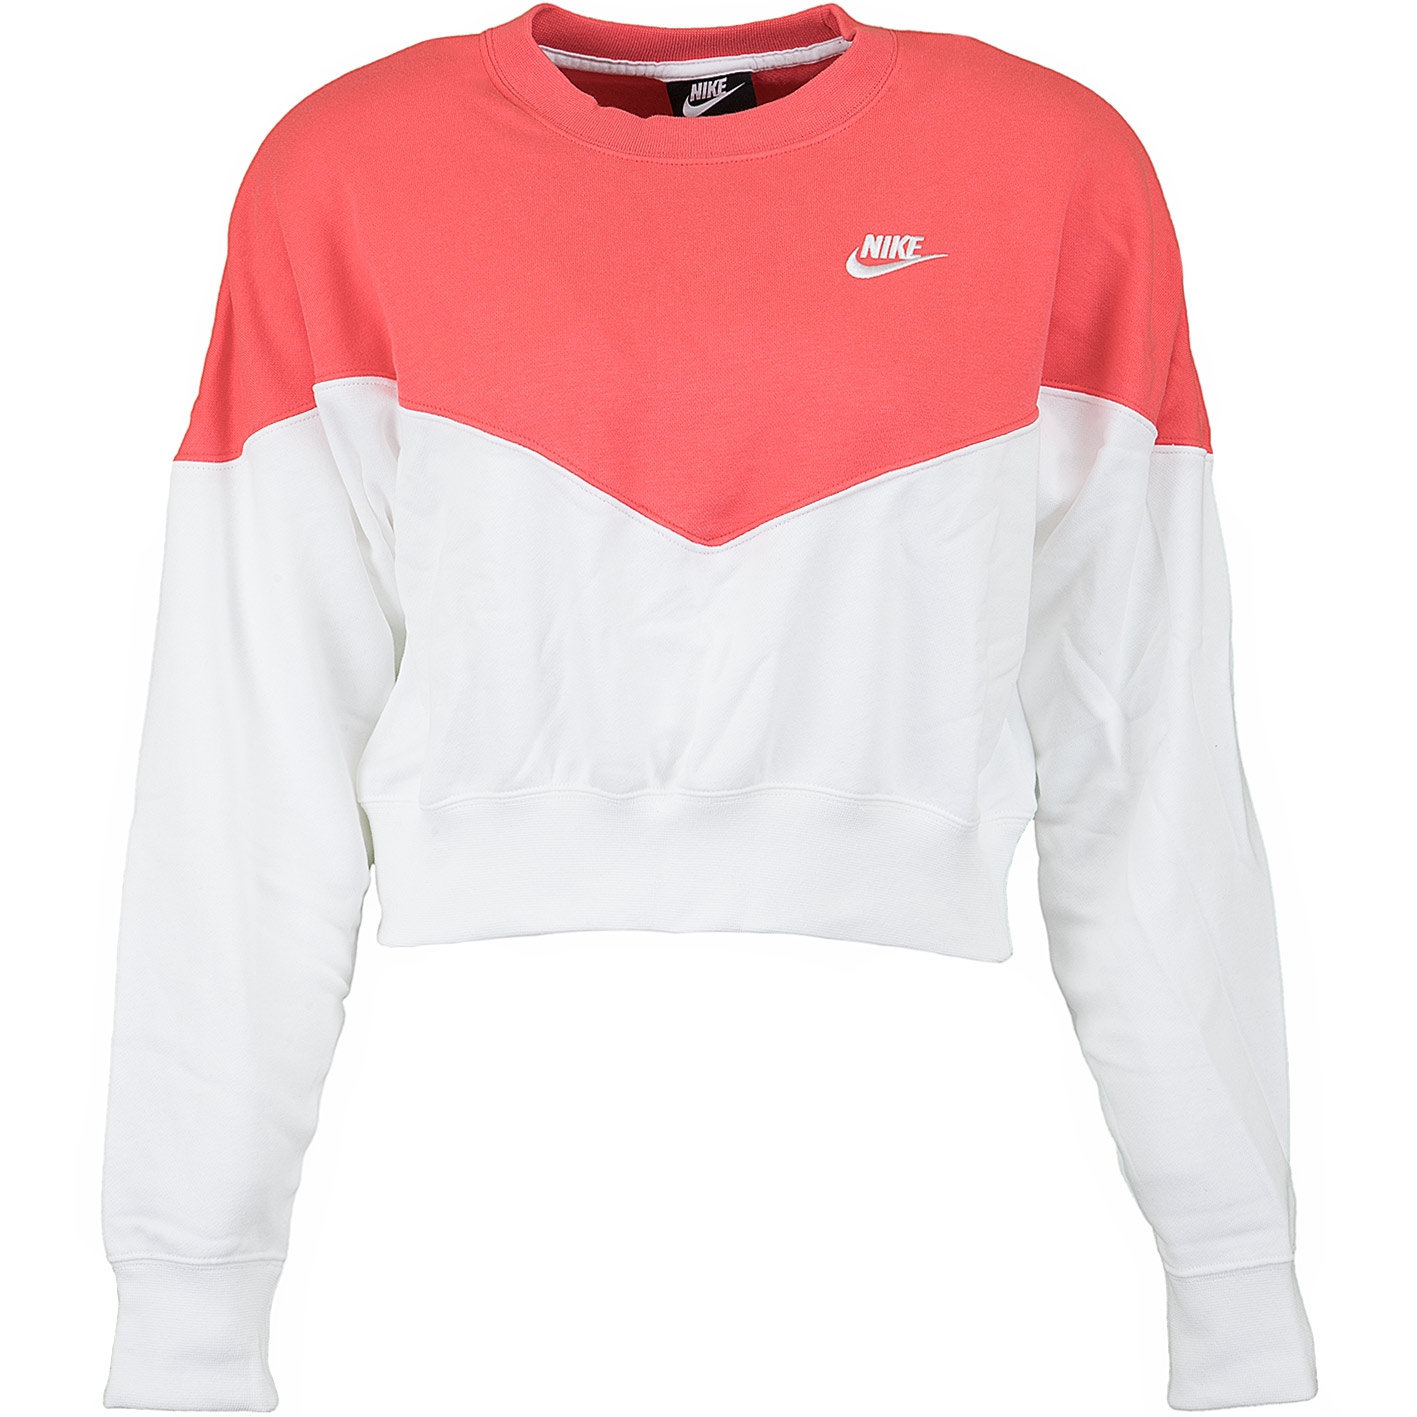 ☆ Nike Damen Sweatshirt Heritage Fleece weiß/rot - hier bestellen!